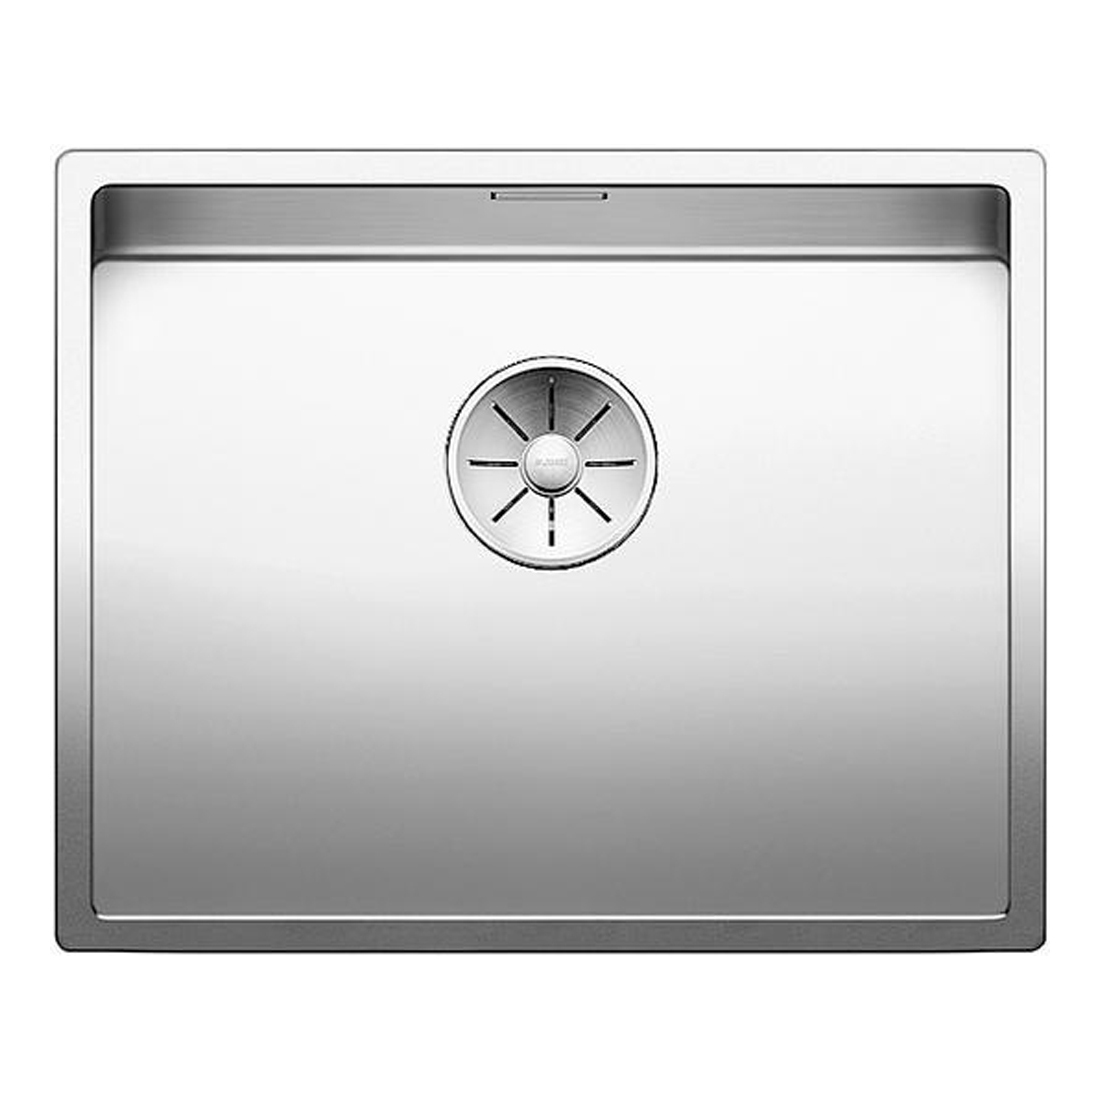 Кухонная мойка Blanco Claron 500-IF зеркальная полировка кухонная мойка blanco axis iii 6s if правая зеркальная полировка